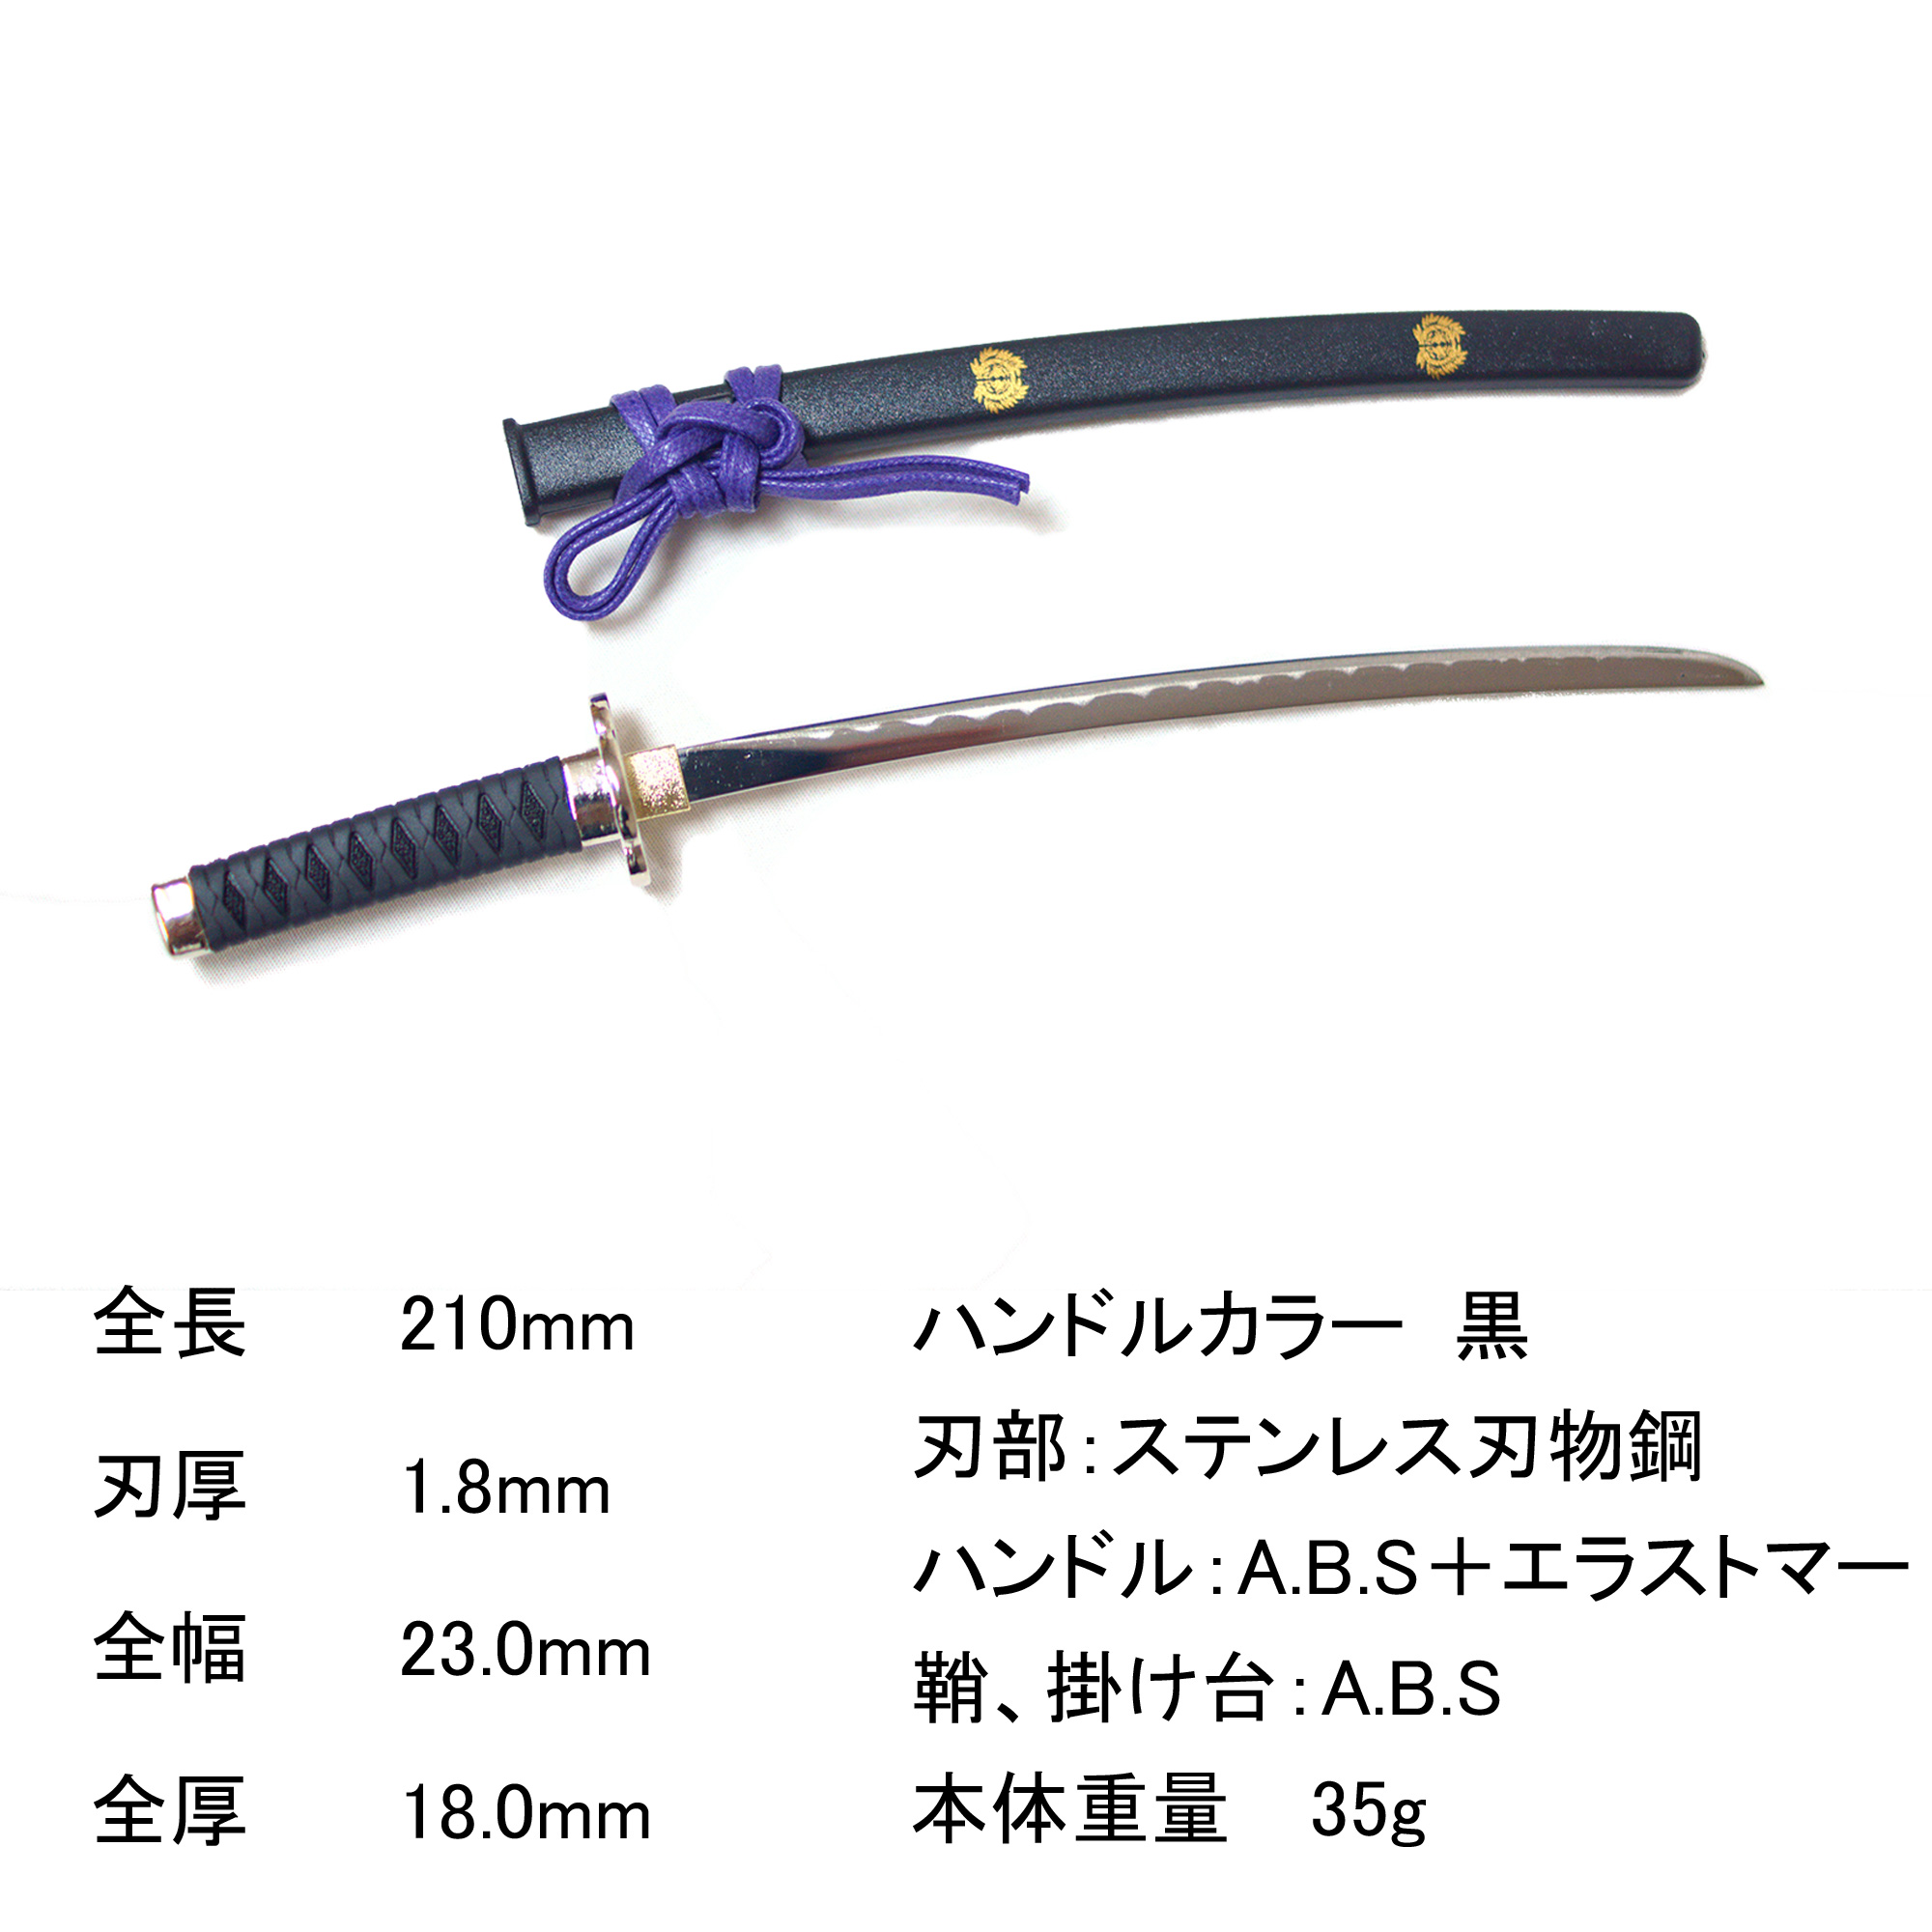 日本製 日本刀ペーパーナイフ 伊達政宗モデル - ニッケン刃物 刀剣 関の刃物 関伝の美